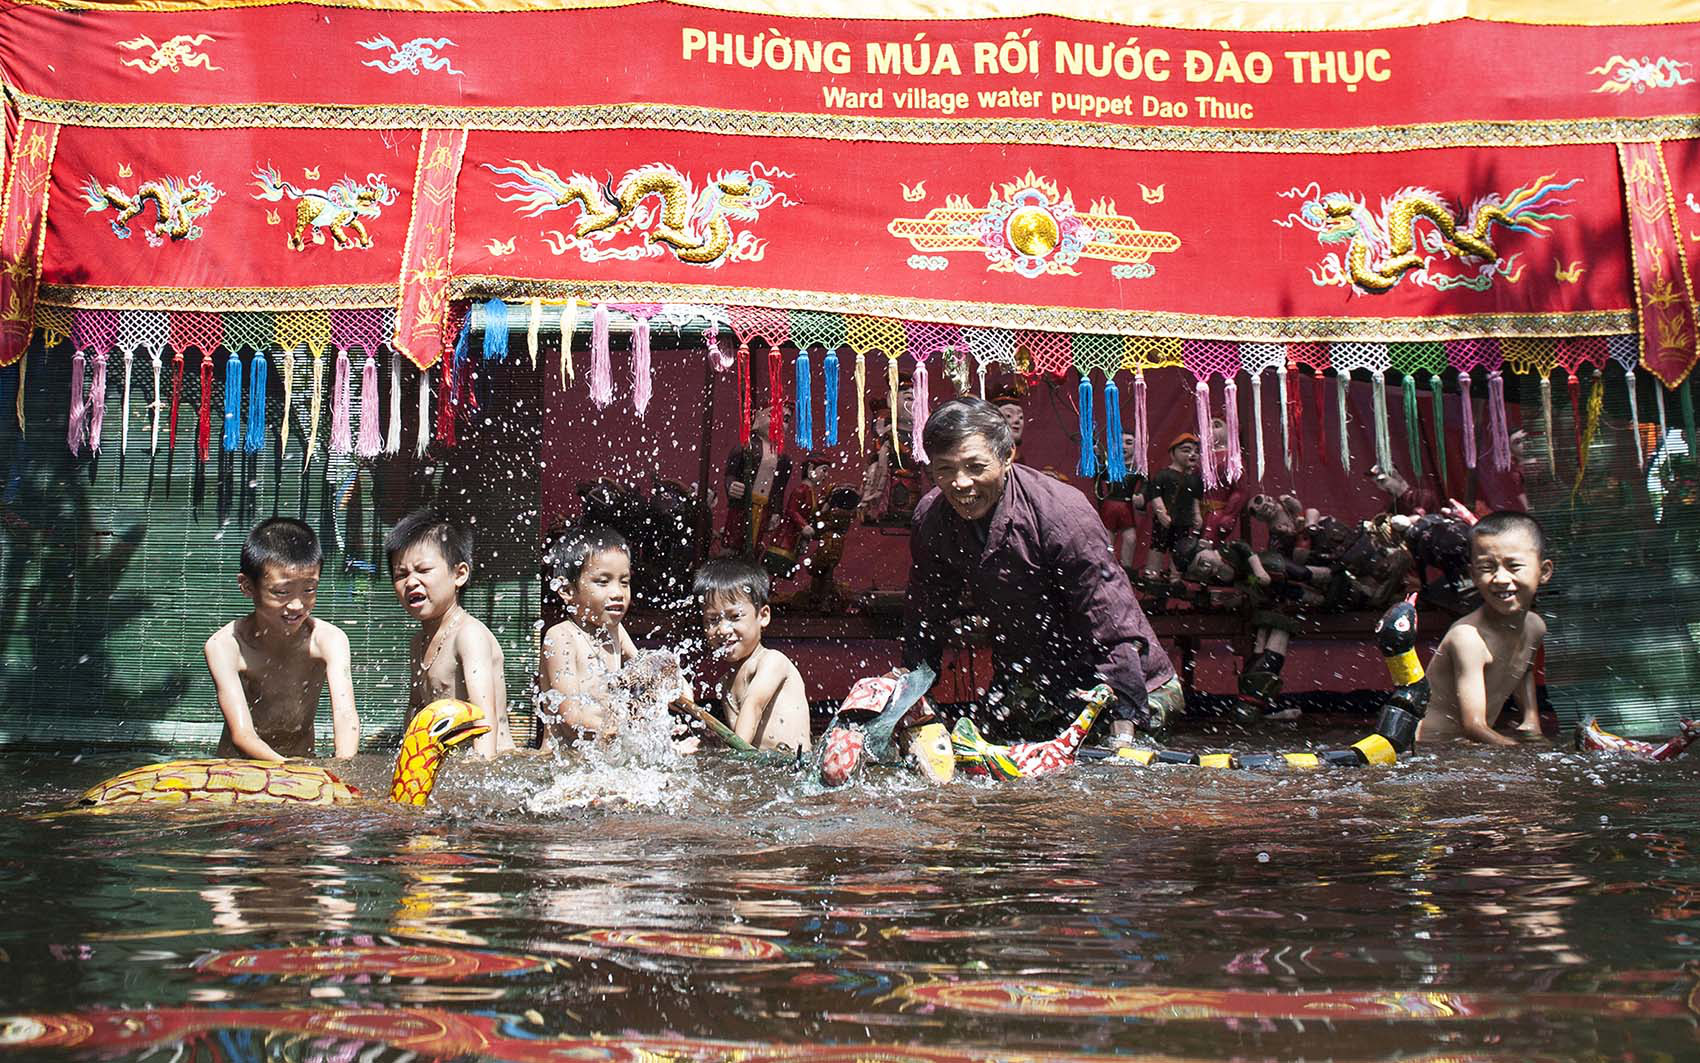 Le Village des marionnettes sur l’eau de Dào Thuc